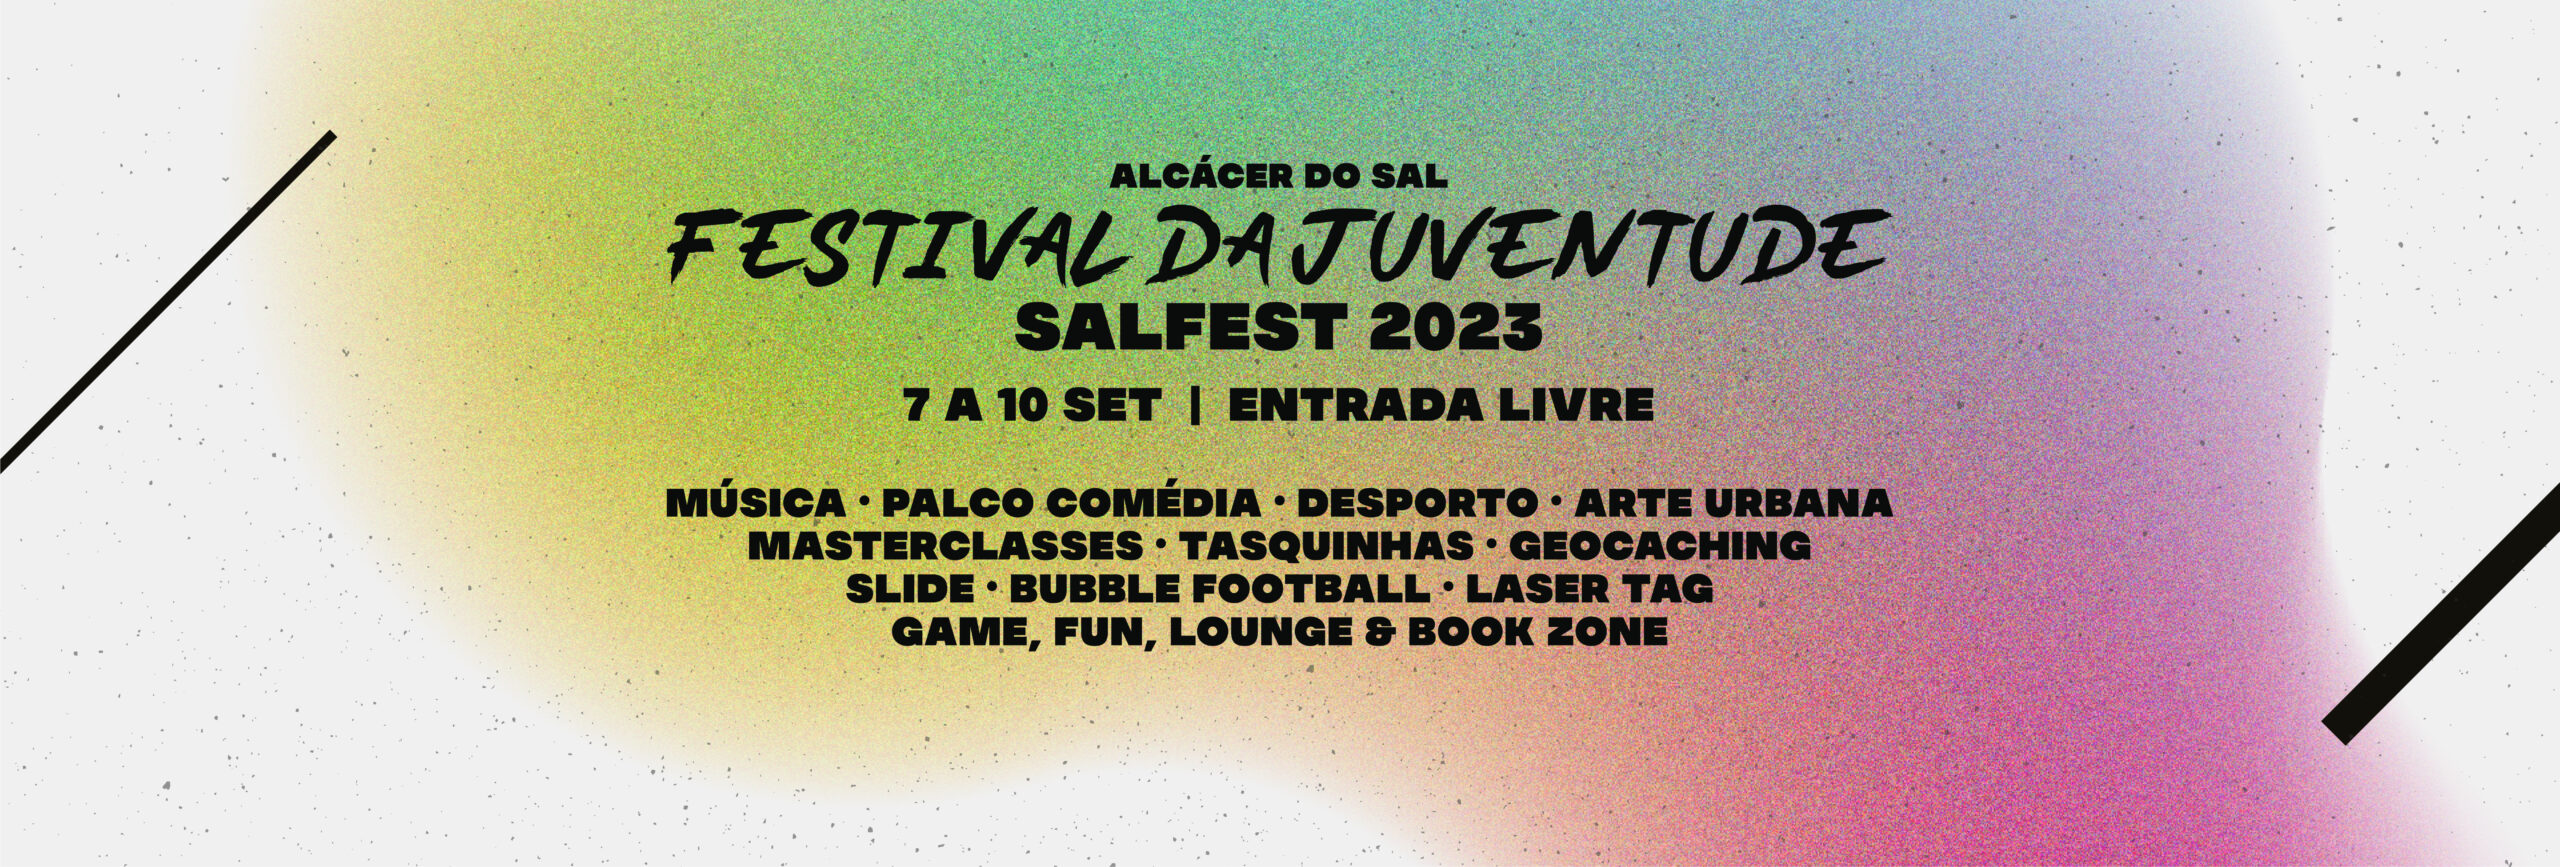 1920x650px_Imagem destaque site_Festival da Juventude - Salfest 2023